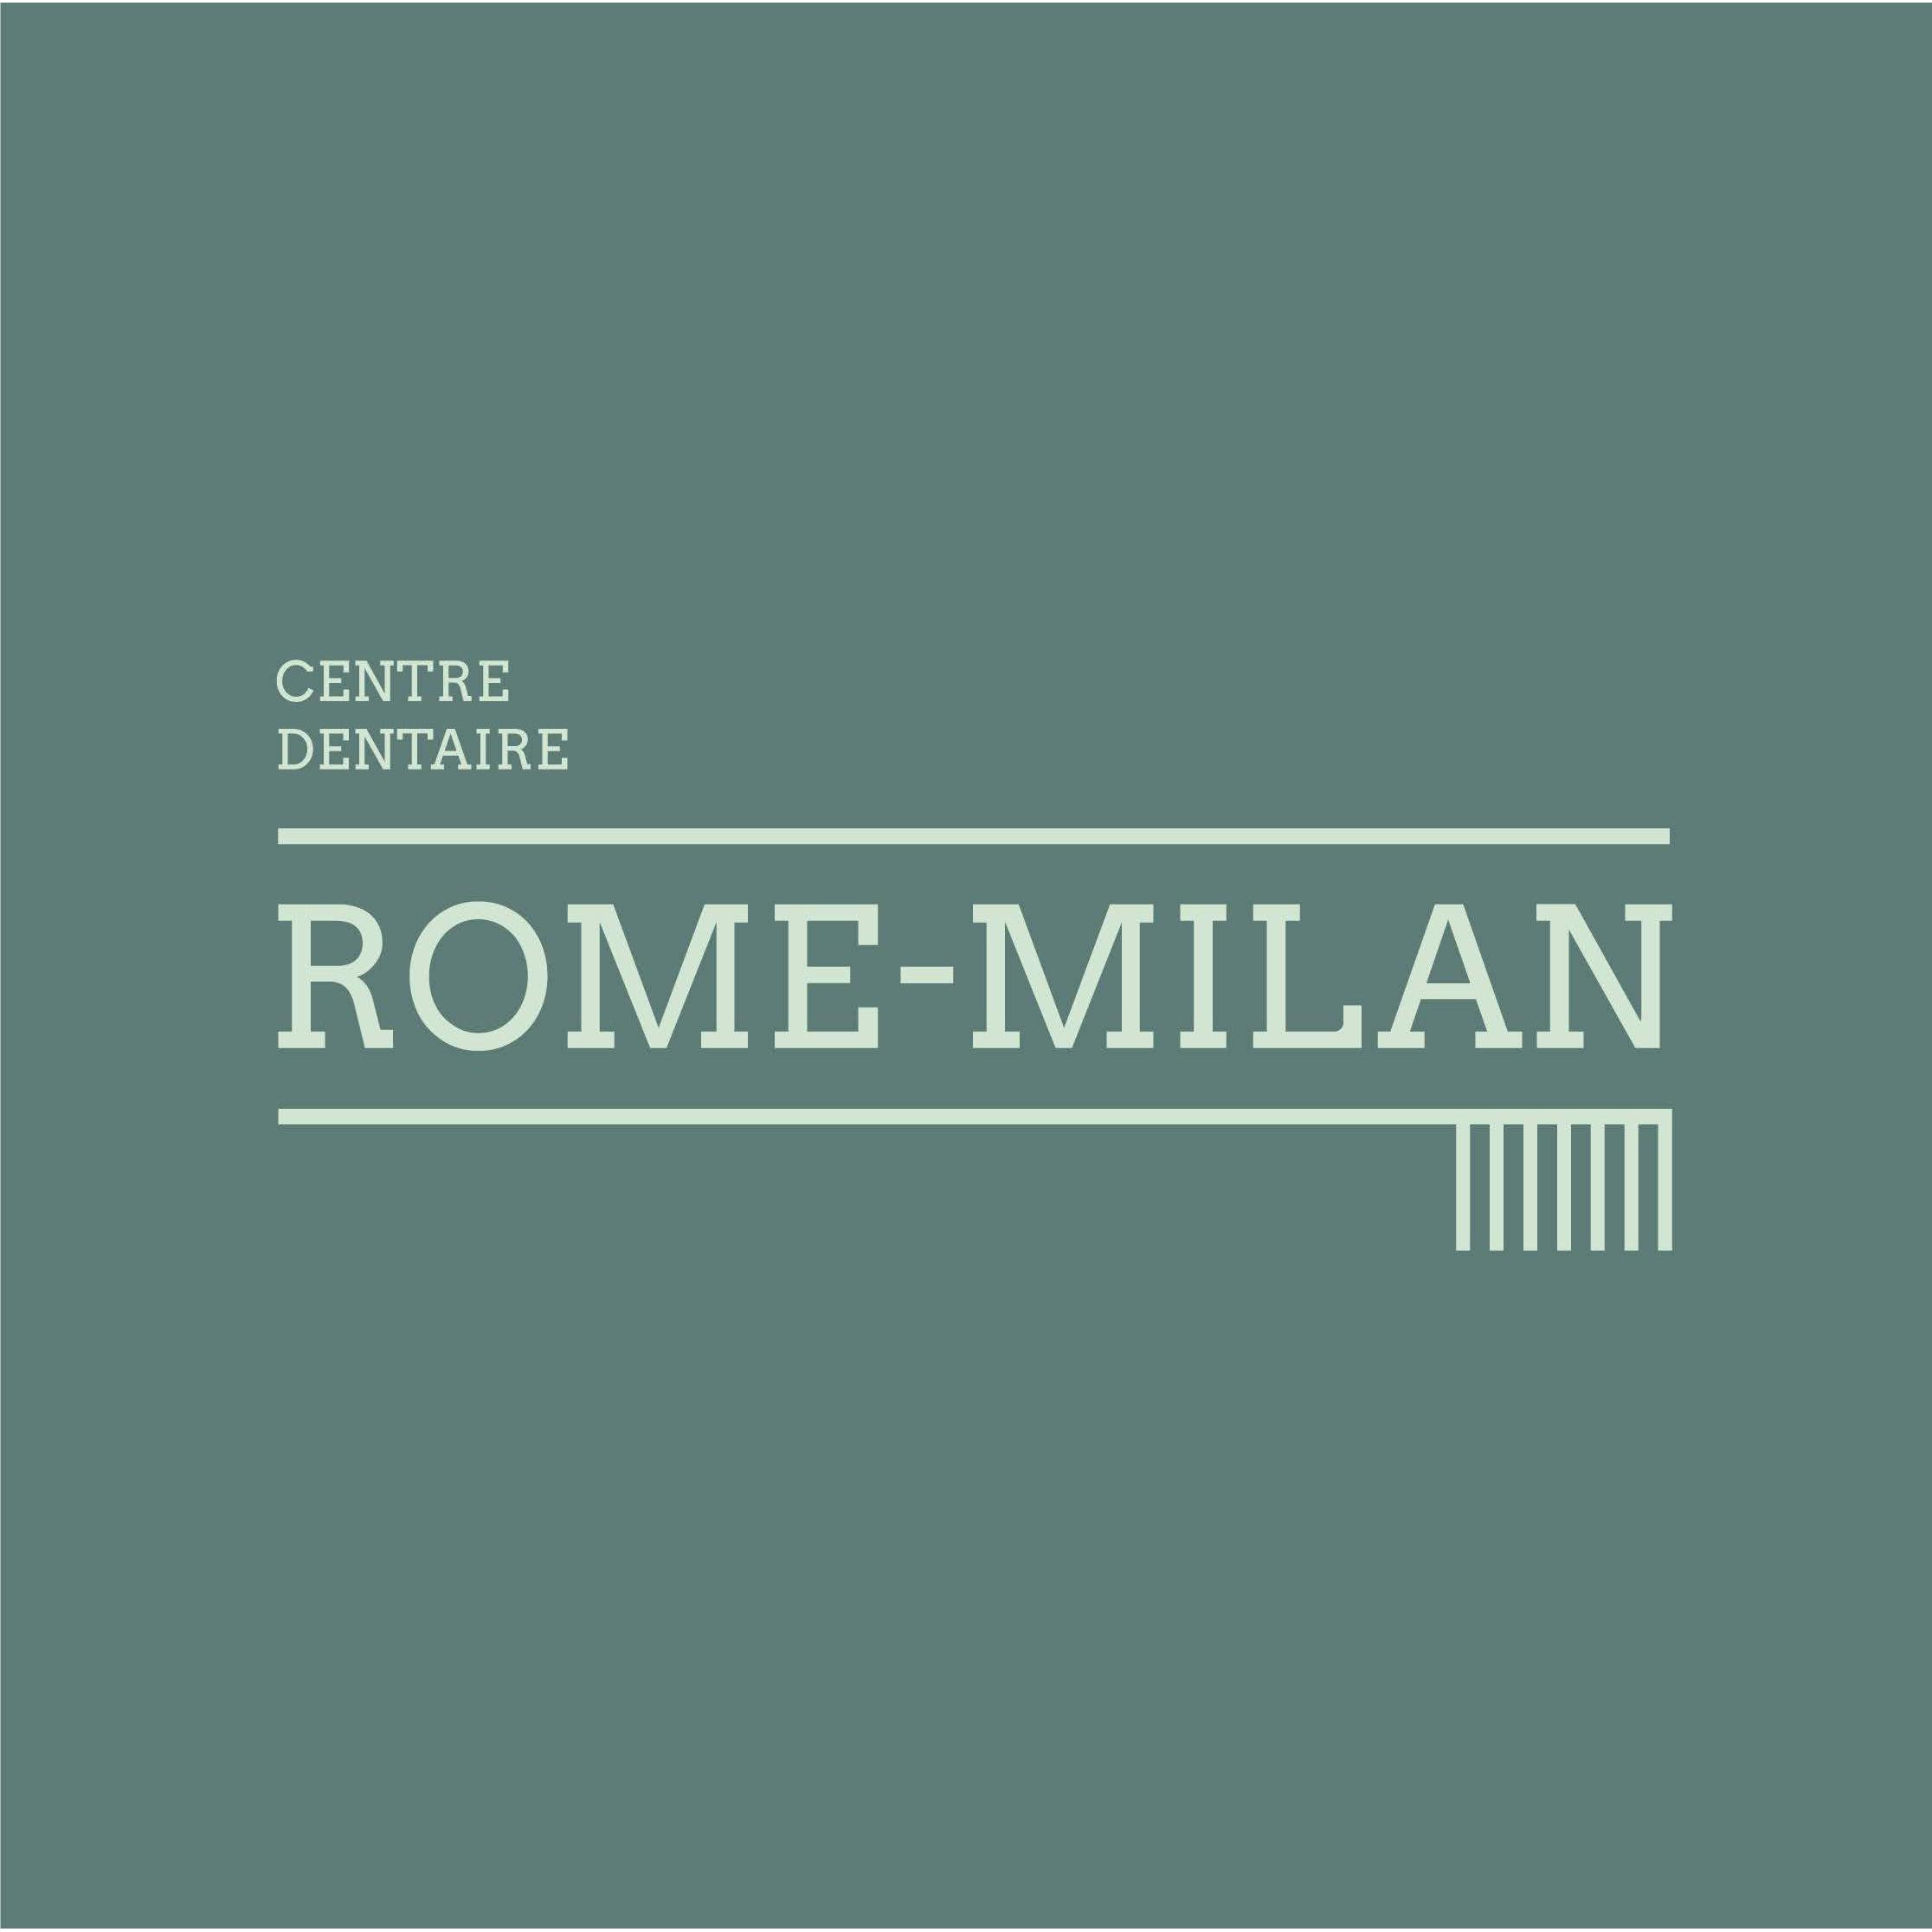 Centre Dentaire Rome-Milan - Dentiste Brossard Logo